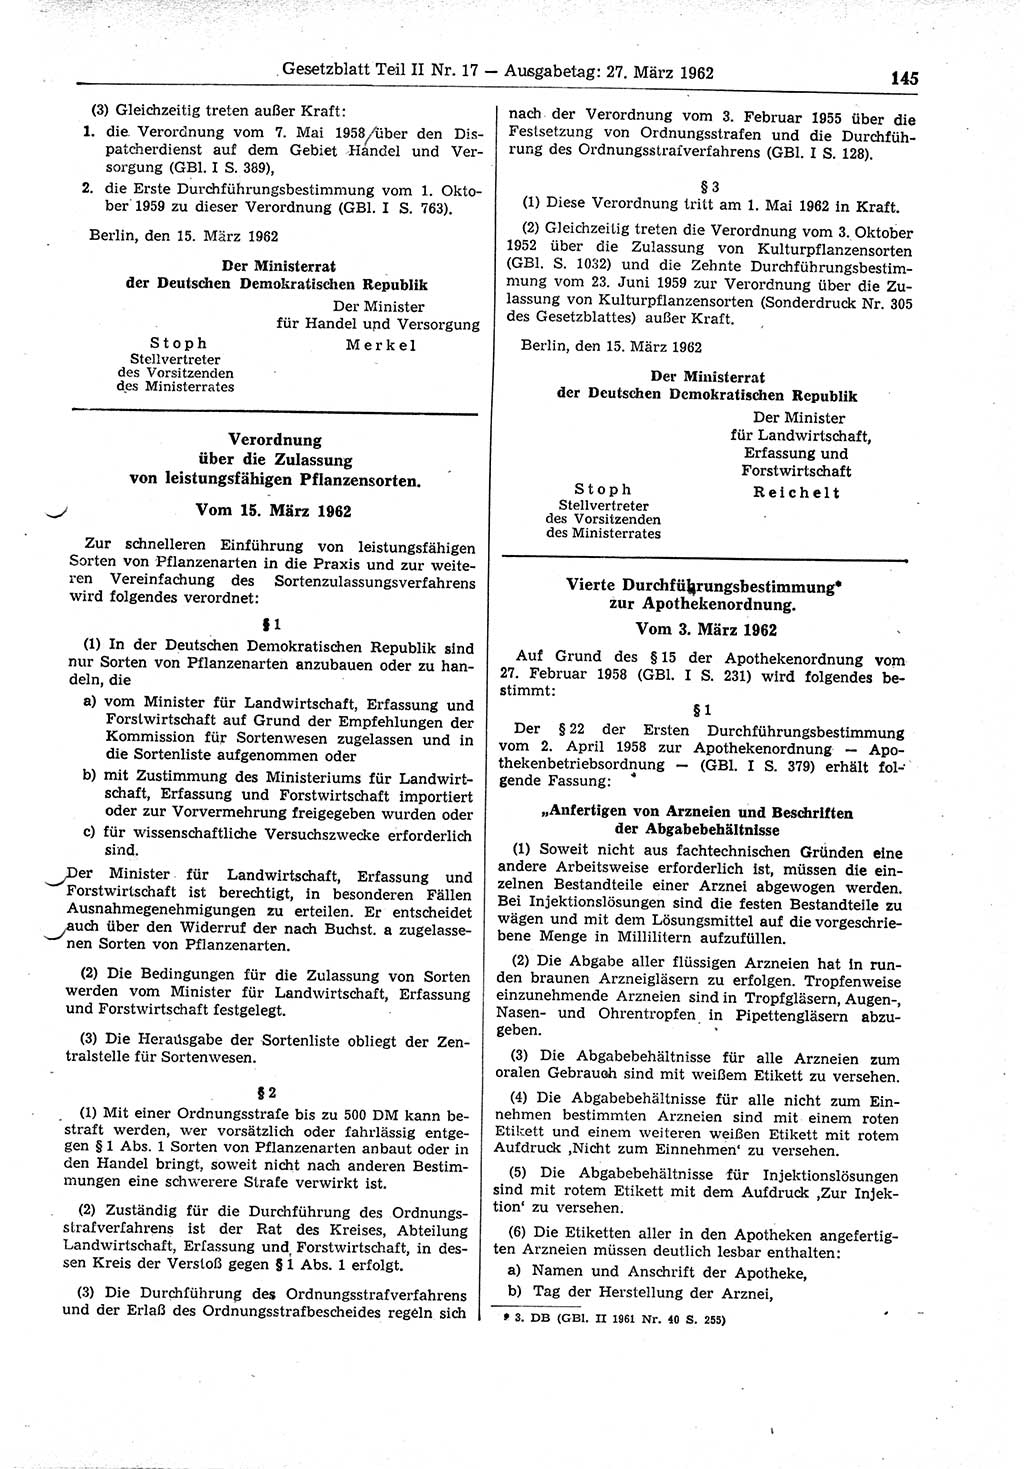 Gesetzblatt (GBl.) der Deutschen Demokratischen Republik (DDR) Teil ⅠⅠ 1962, Seite 145 (GBl. DDR ⅠⅠ 1962, S. 145)